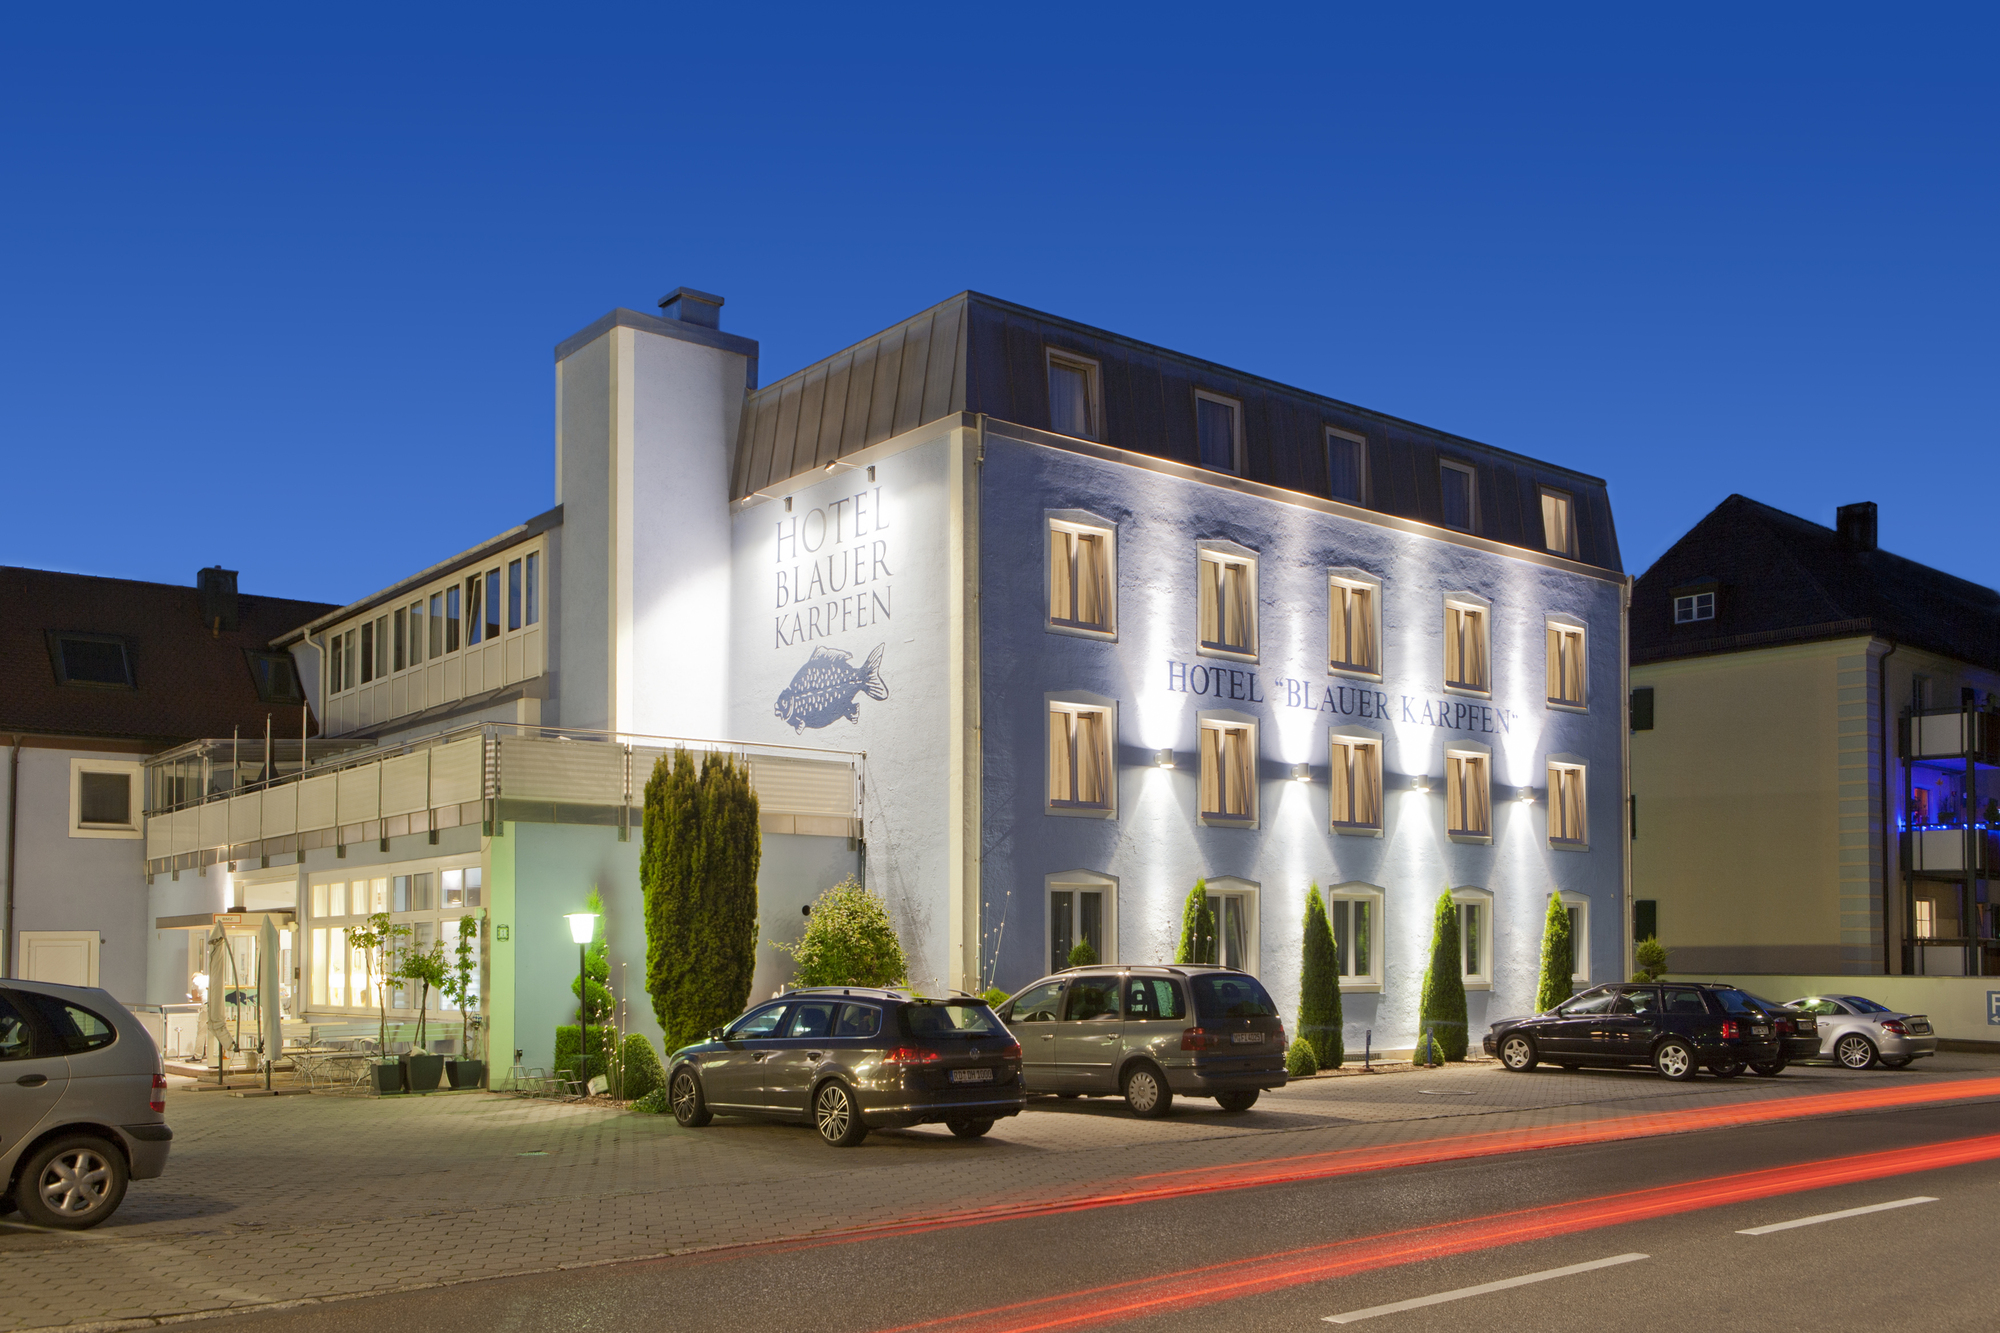 Das Hotel blauer Karpfen,  Biker Treff Hotel in Oberschleißheim bei München